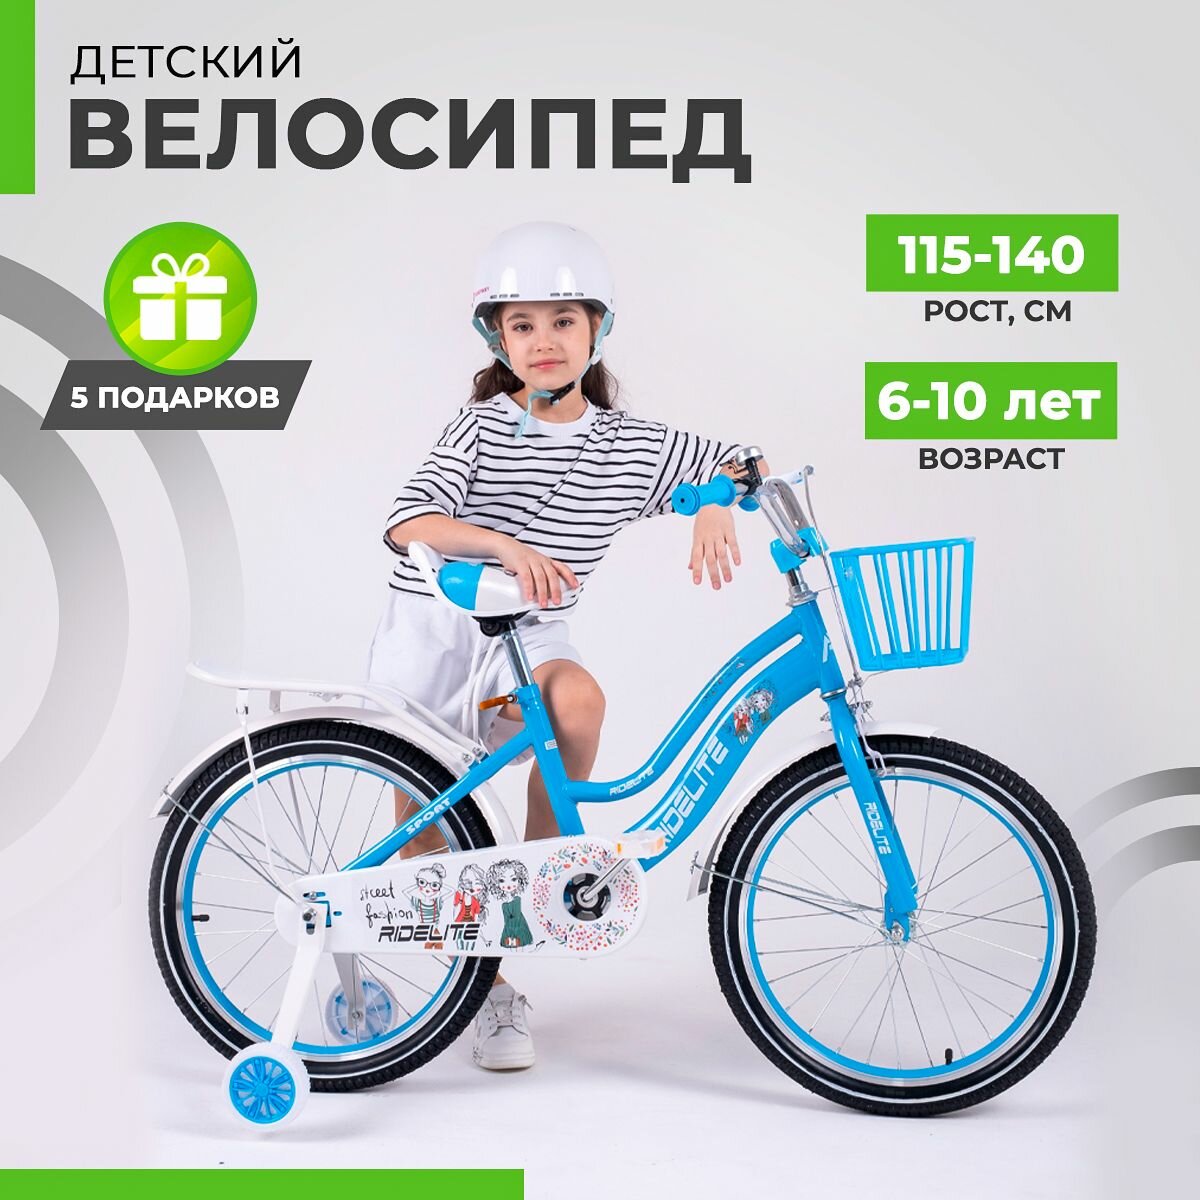 Велосипед детский двухколесный 20", велик для девочек, RIDELITE голубая рама 11", рост 115-140 см